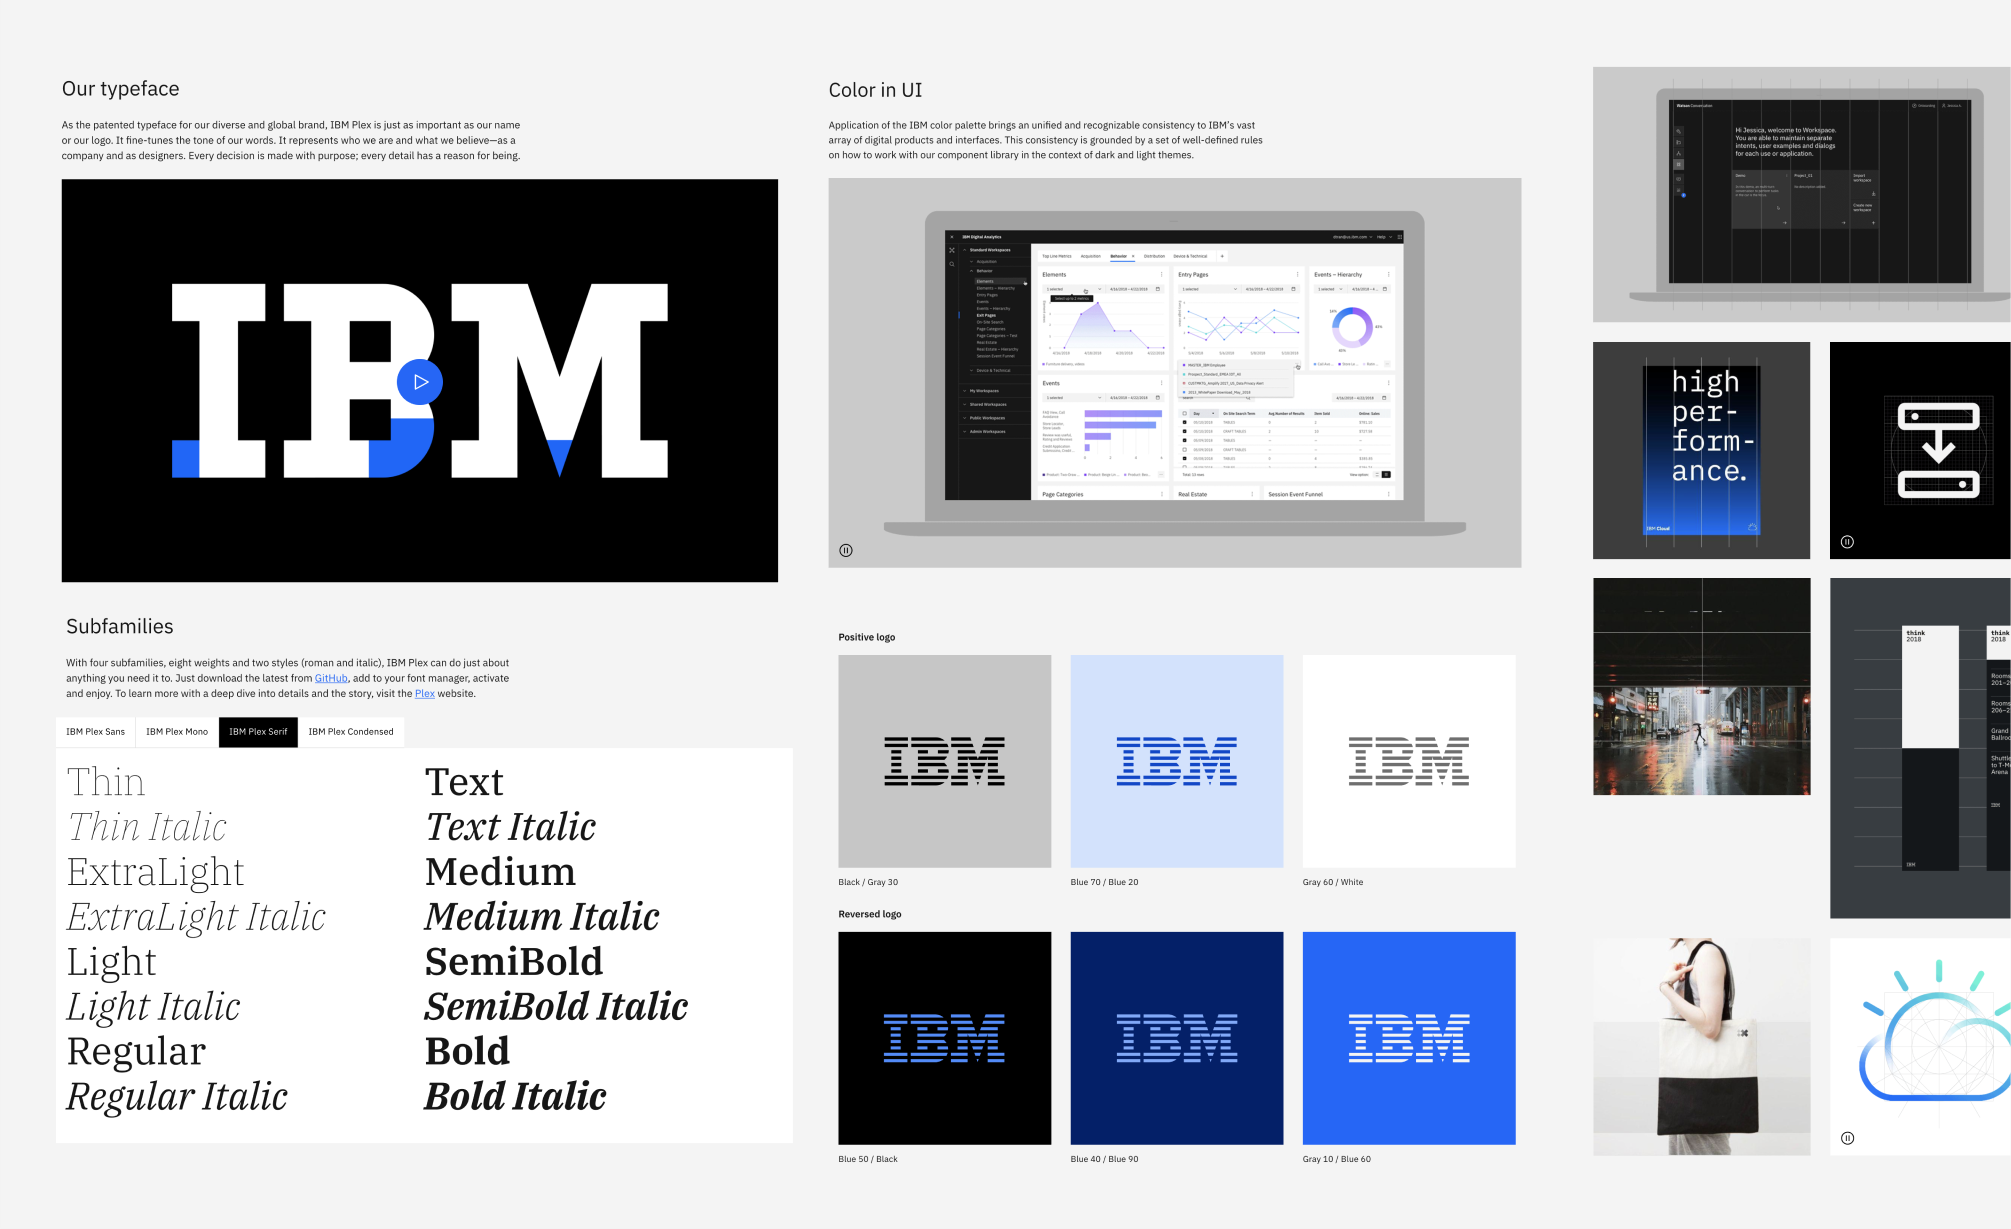 Fragmenty strony internetowej IBM. Na grafice znajdują się elementy opisujące logo, dopuszczalne warianty kolorystyczne znaku, firmową typografię oraz przykład użycia kolorystyki firmowej w interfejsie aplikacji.